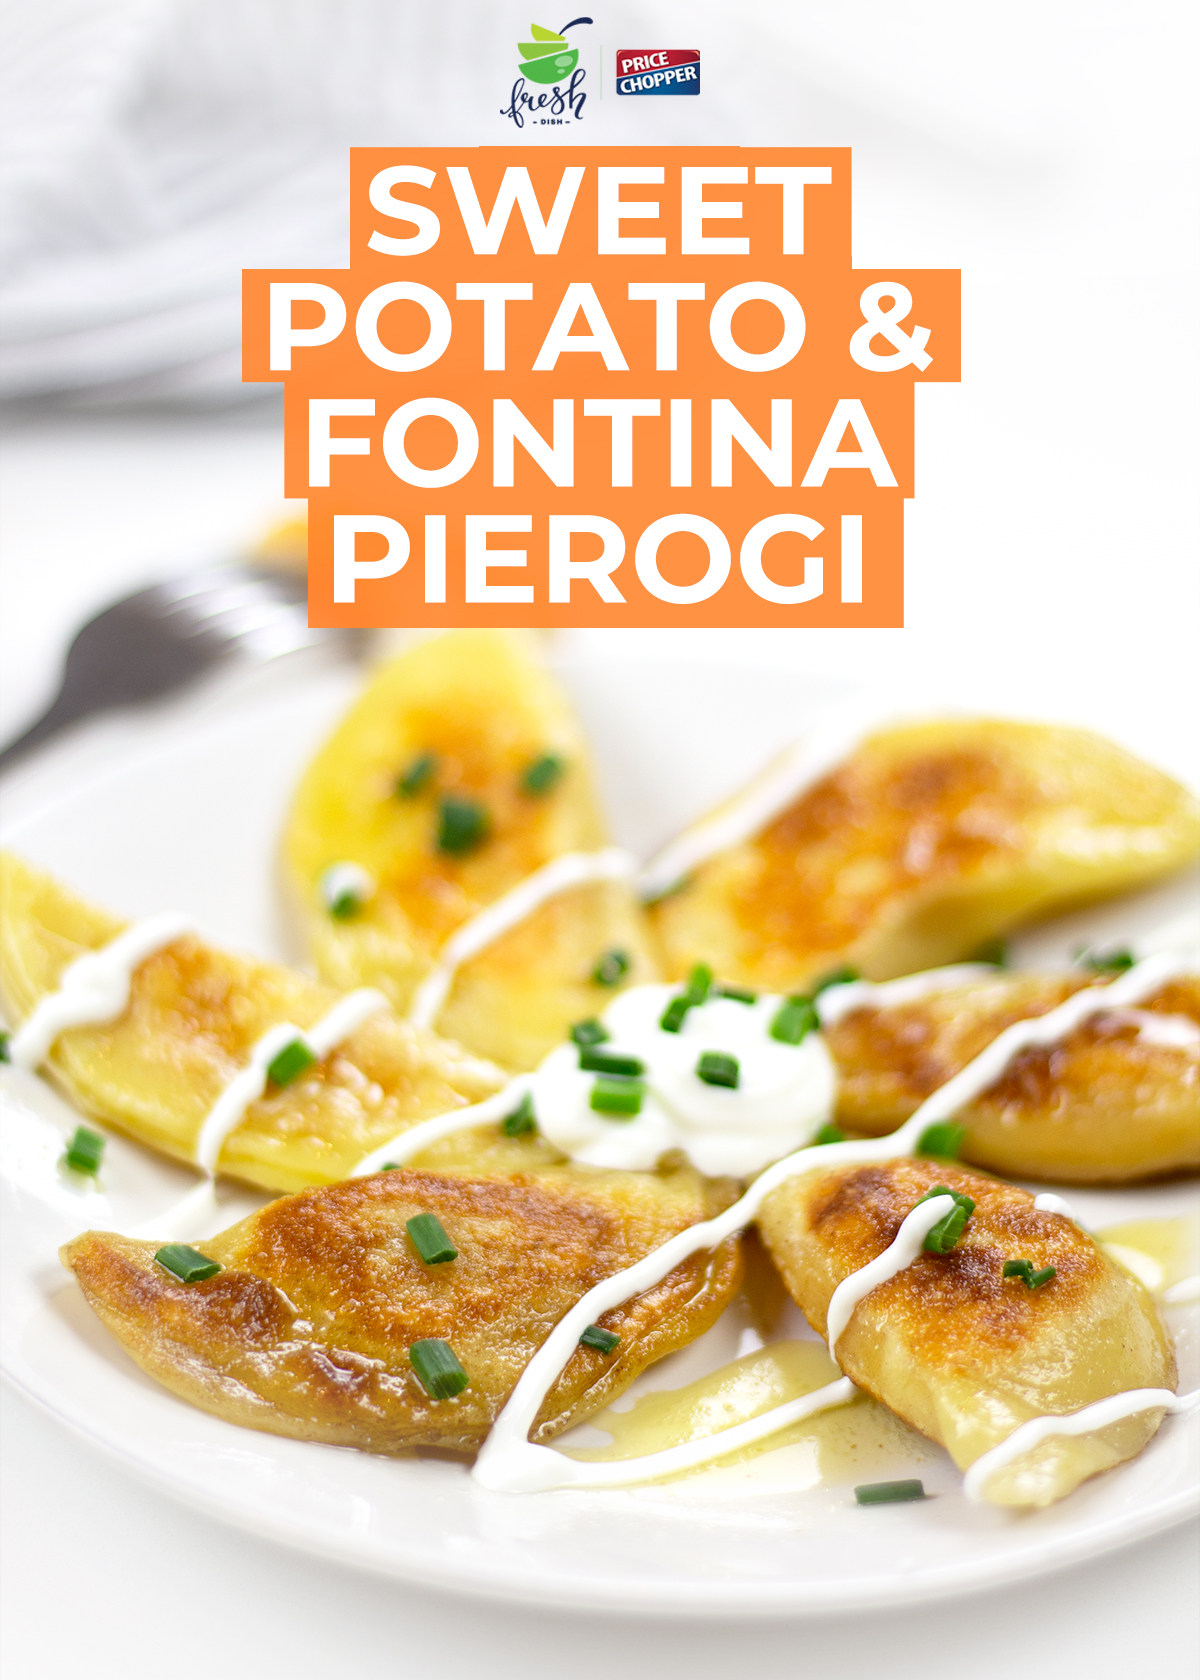 Sweet Potato and Fontina Pierogi